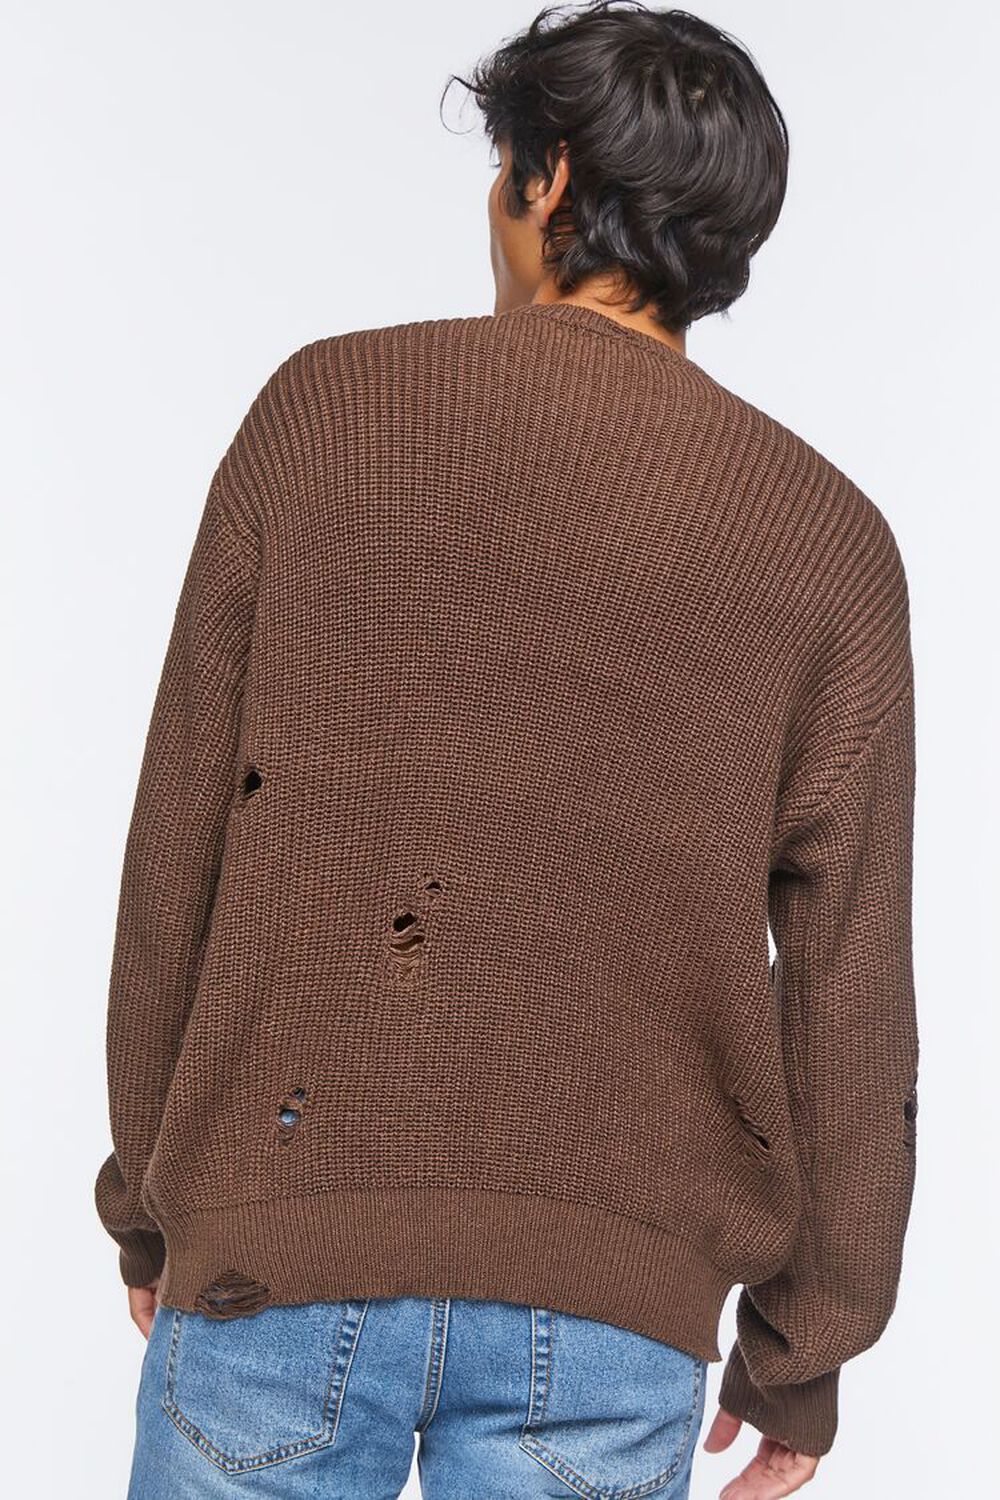 DARK BROWN Distressed Drop-Sleeve Sweater, image 3